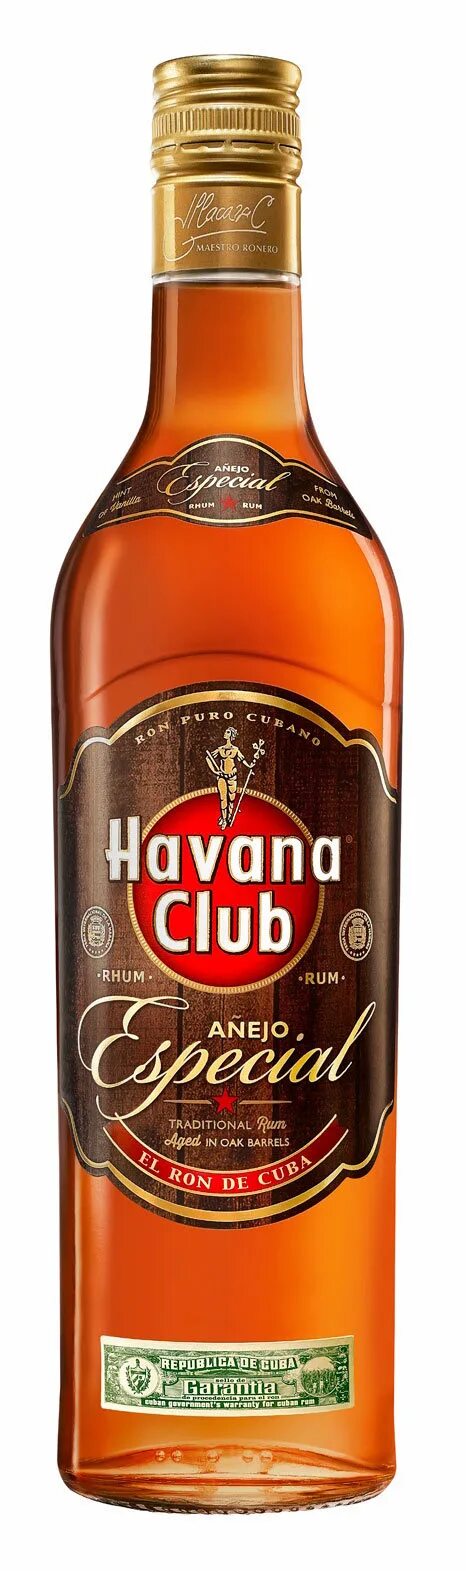 Ром Havana Club Anejo especial, 0.7 л. Ром Havana Club especial. Ром Гавана клаб Аньехо Эспесиаль 3 года 0,7 л. 40 %. Ром выдержанный Гавана клуб Аньехо 3 года. Ром 3 лет